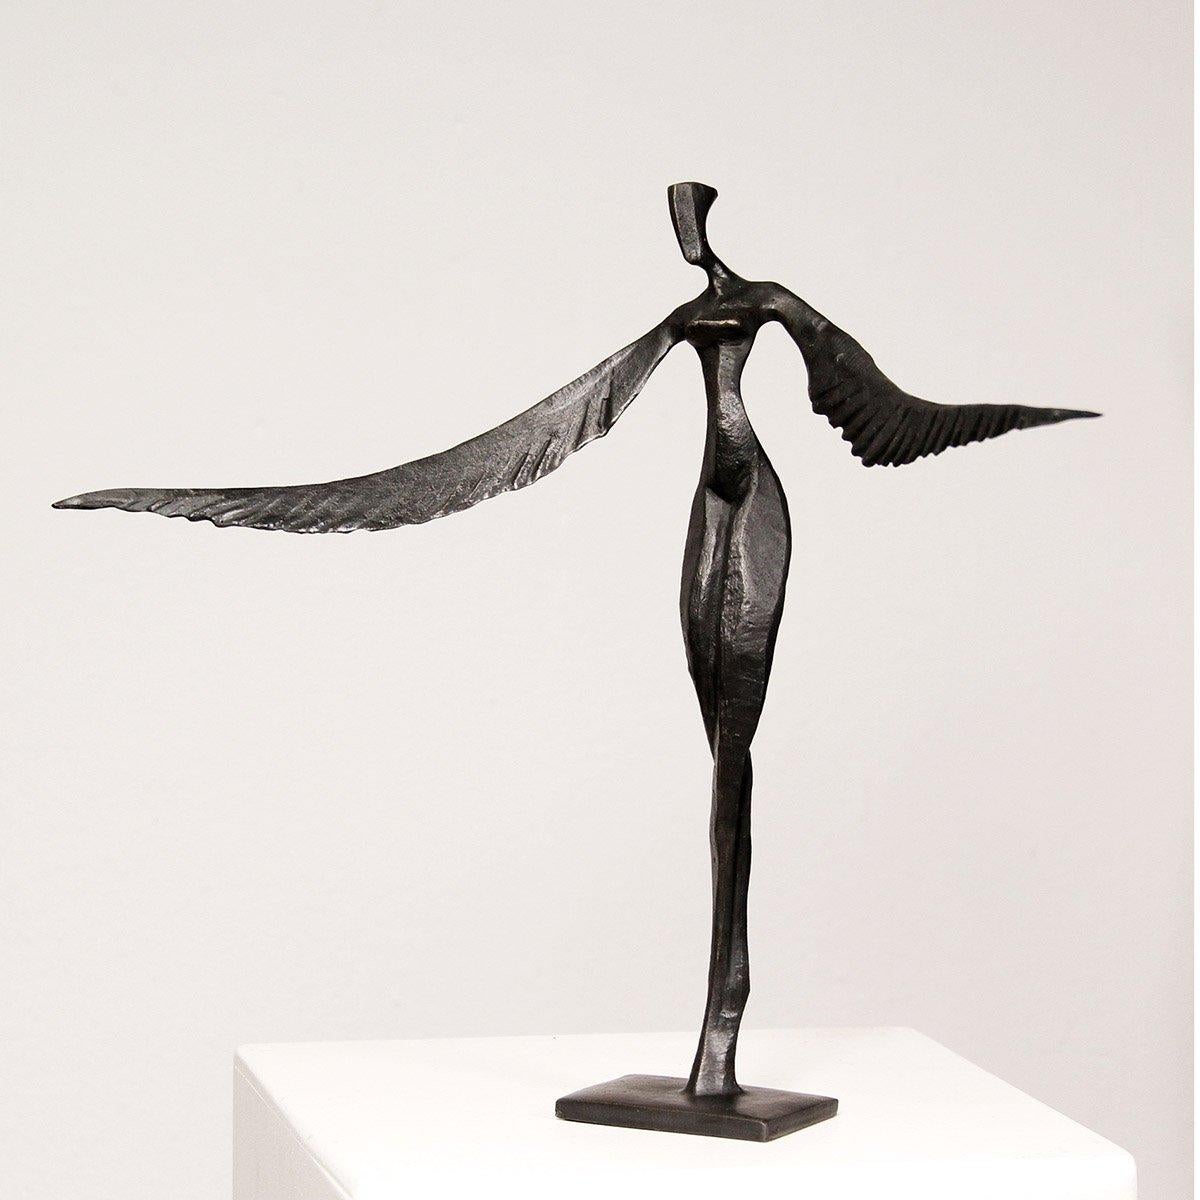 Fae - Victoria est une élégante sculpture figurative en bronze de Nando Kallweit.

Inspirée de la légende du phénix, cette figure féminine a de gracieuses ailes à la place des bras.  La pièce, et son double nom, fait allusion à la force et à la